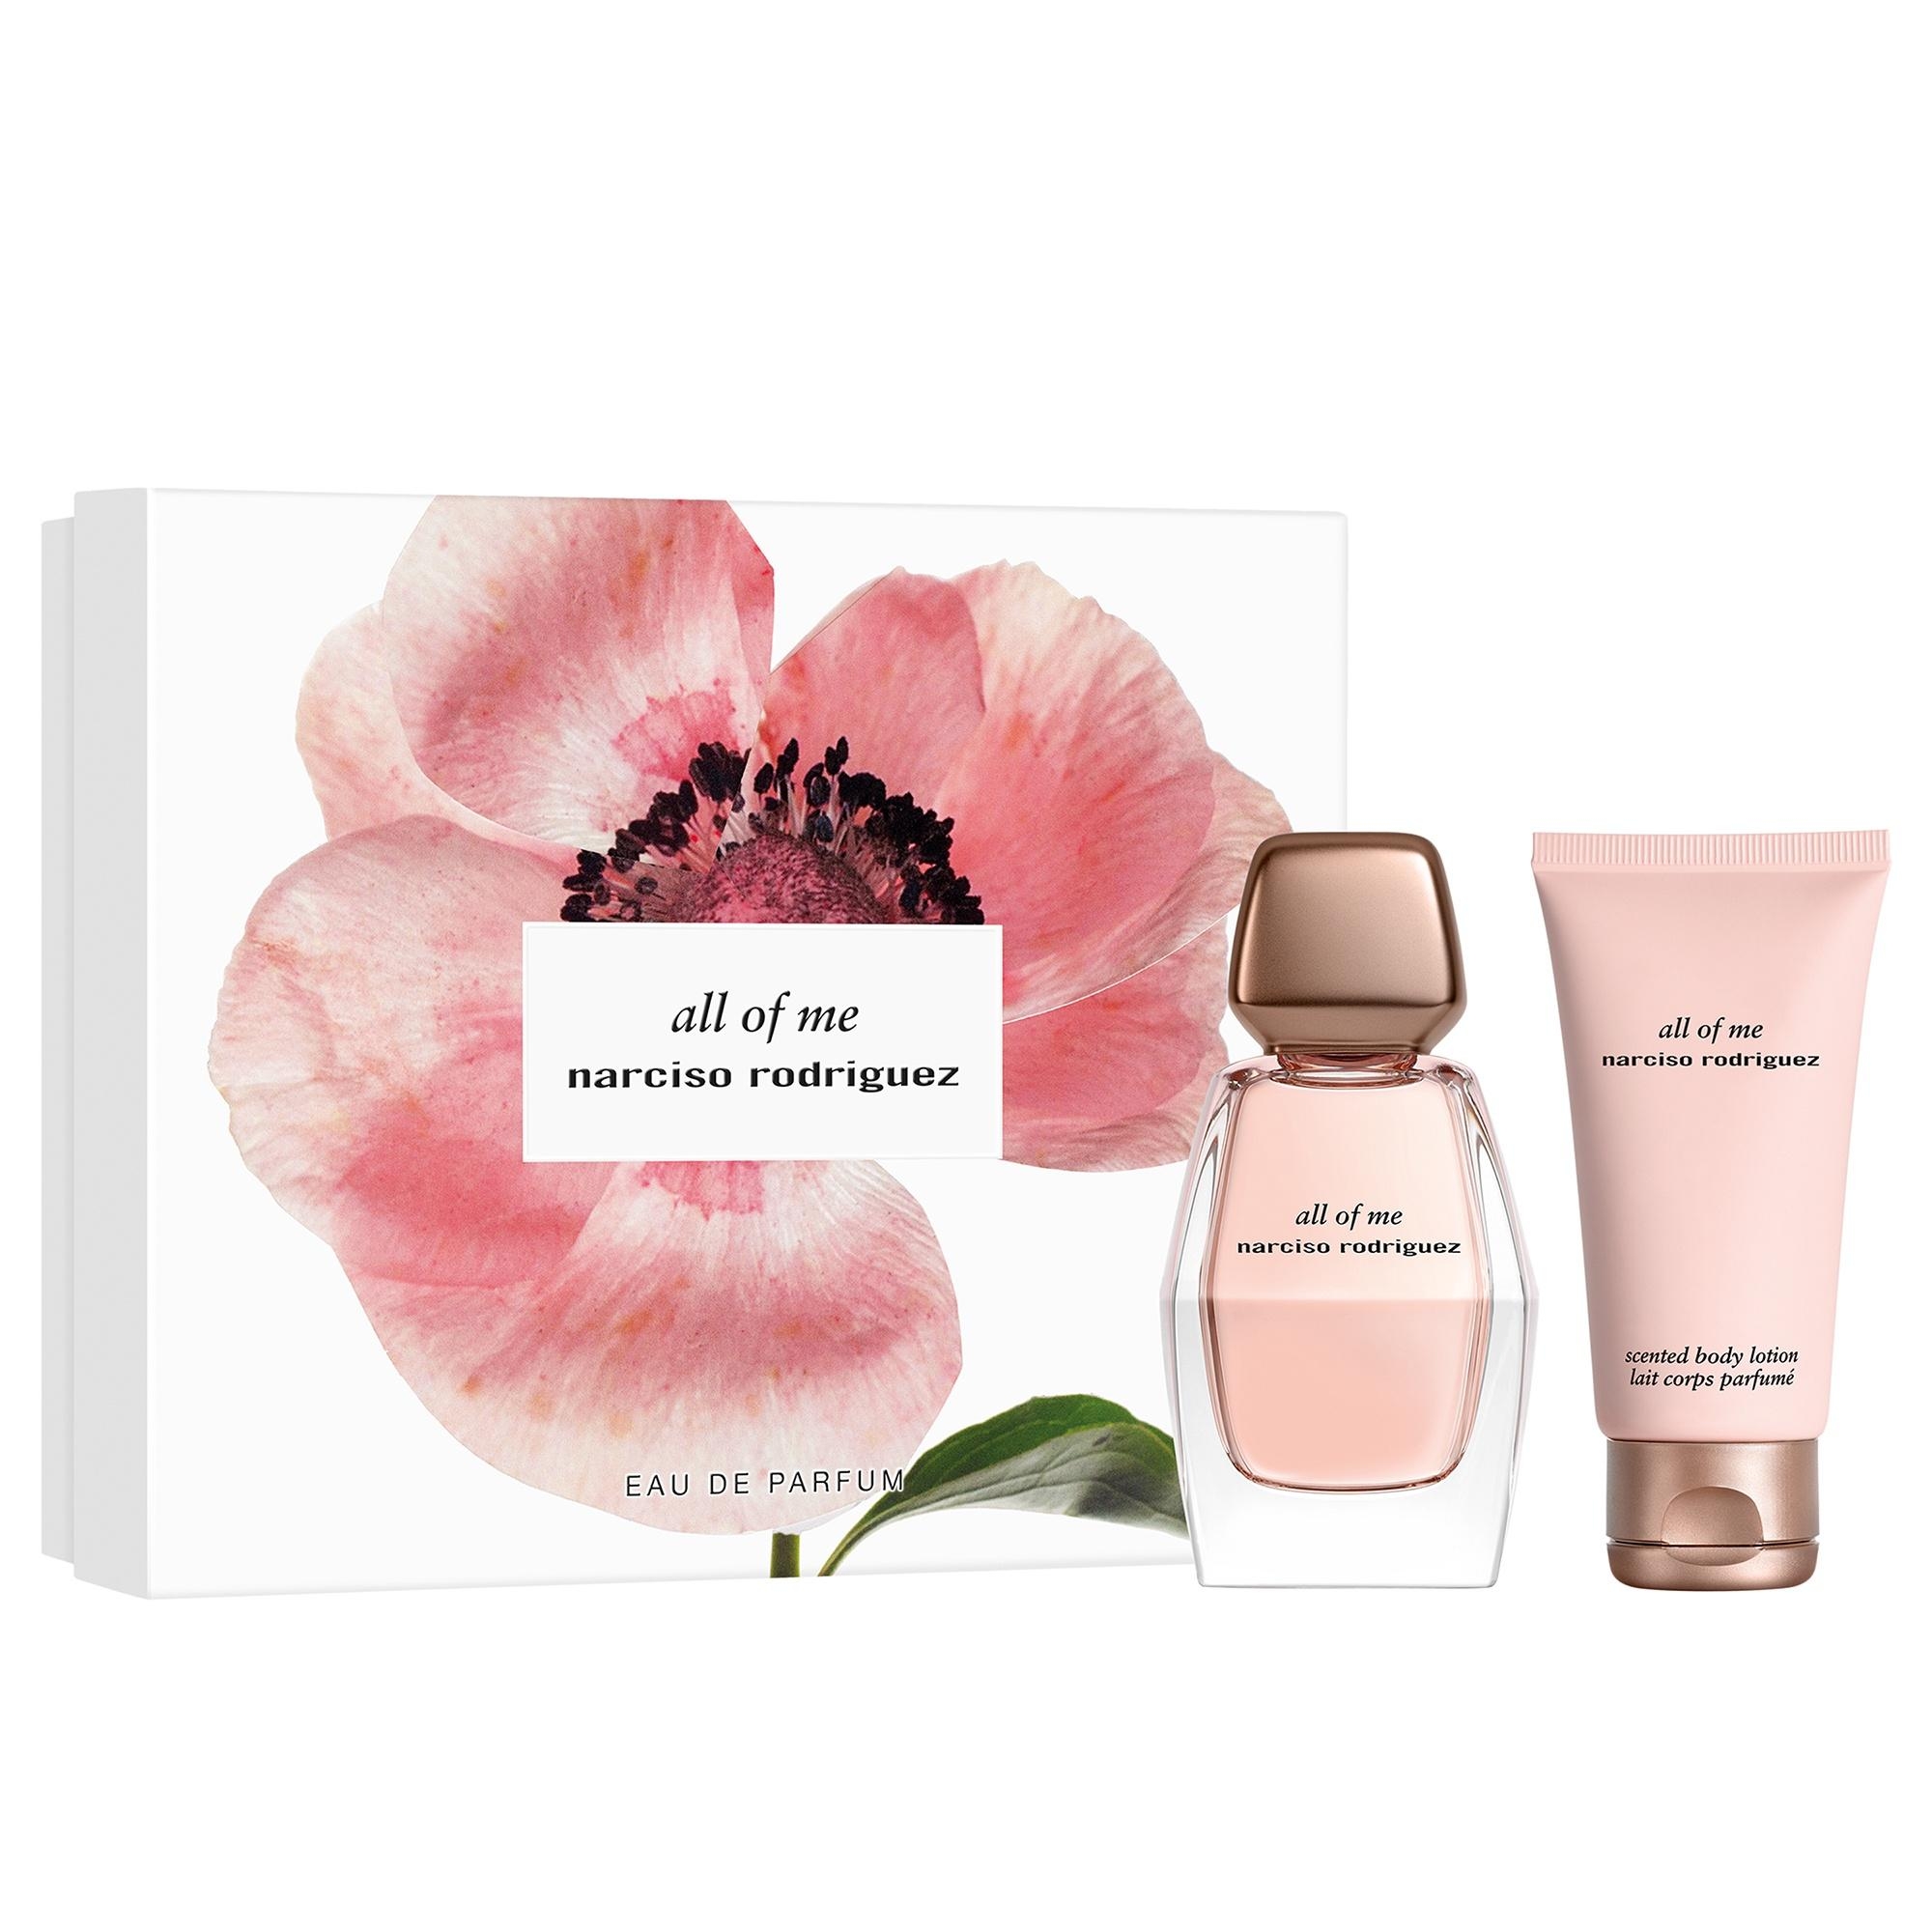 Produktbild von All of me Eau de Parfum Spring Set